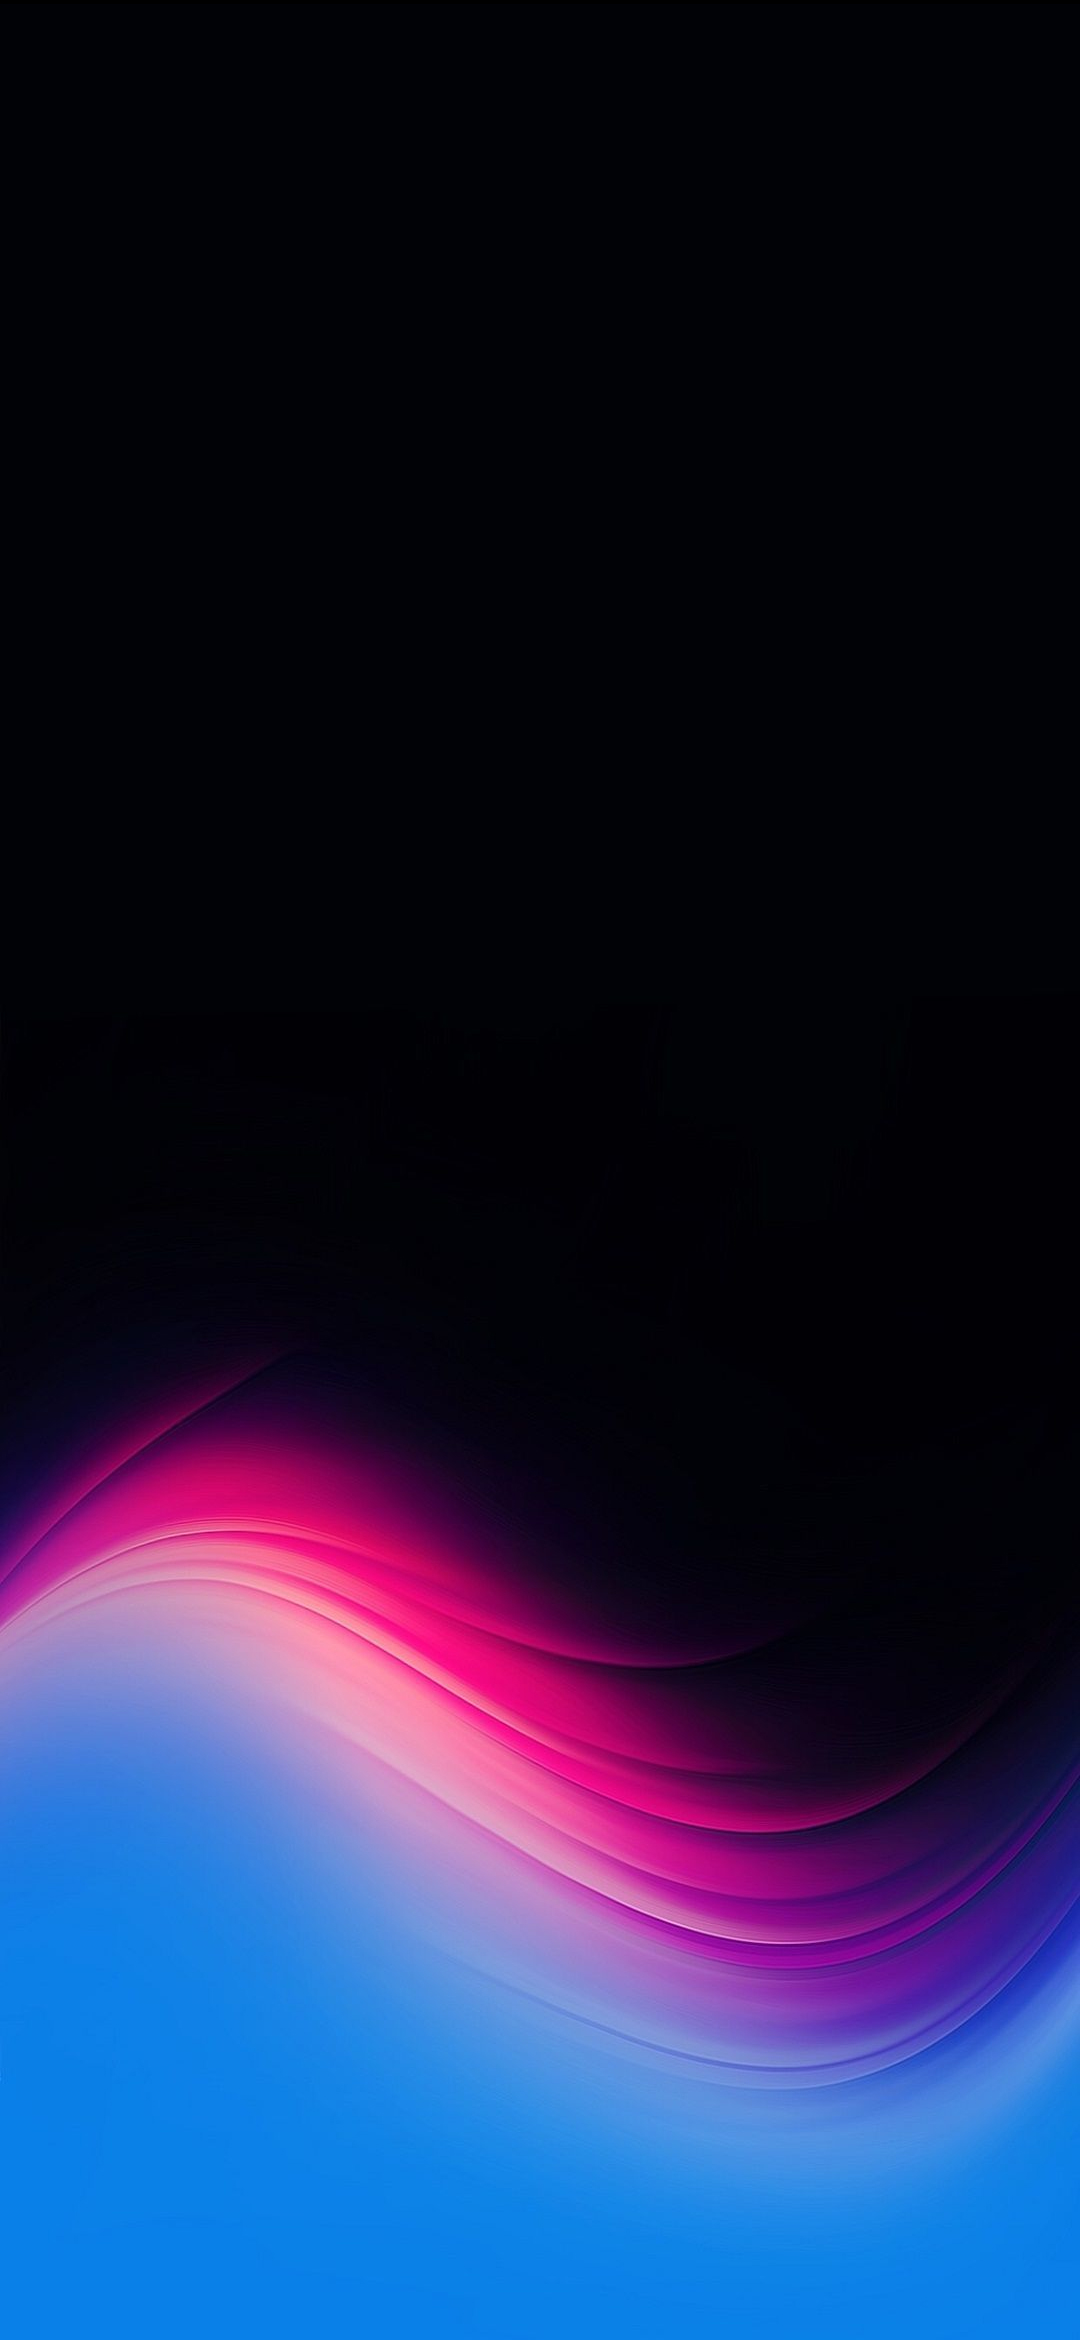 ピンクと水色と黒のかっこいいテクスチャー Google Pixel 4a Android スマホ壁紙 待ち受け スマラン